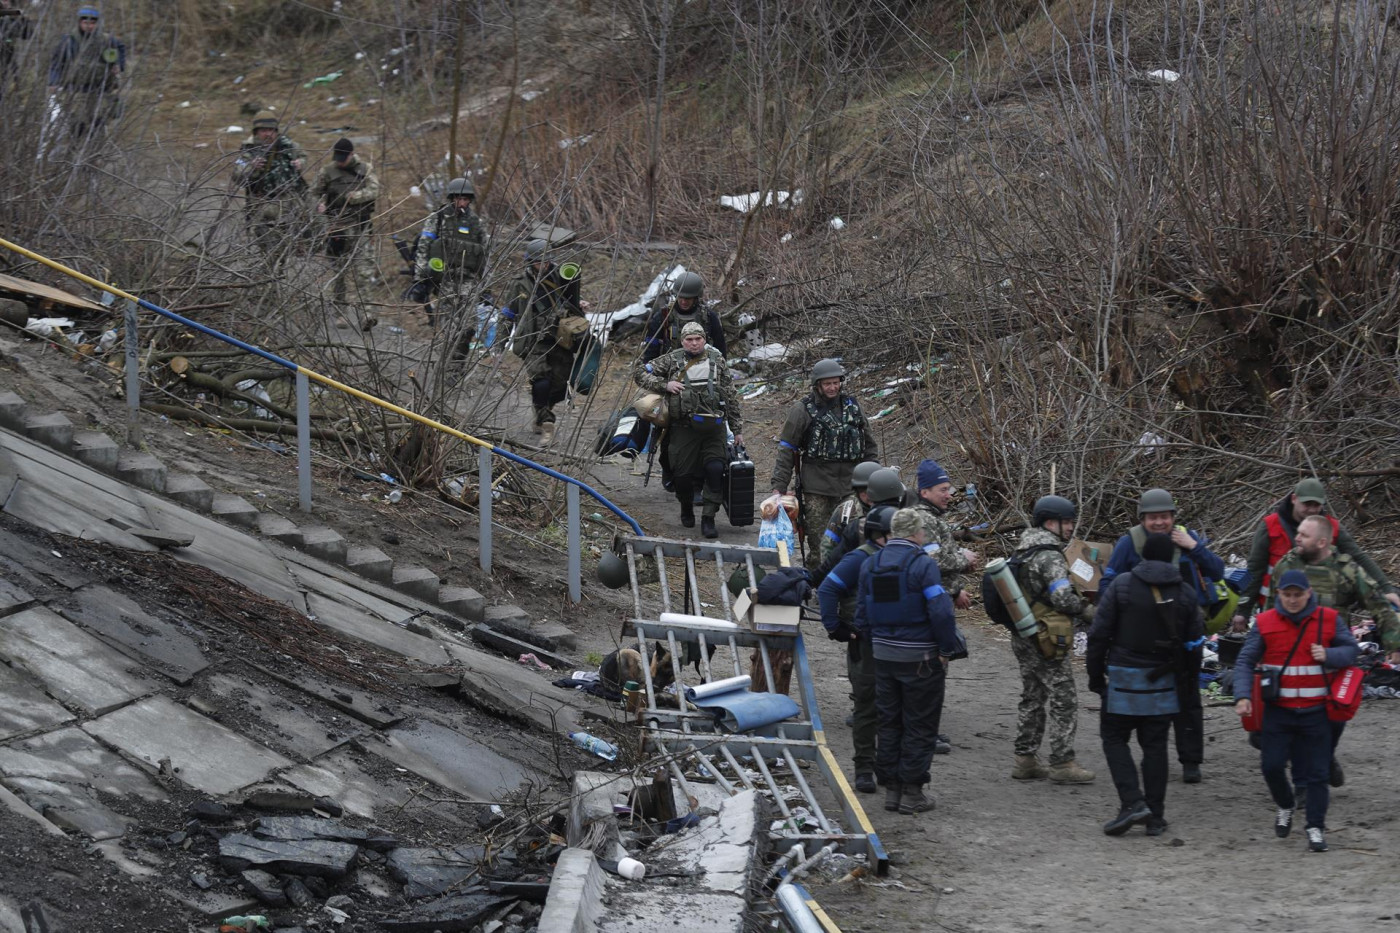 2.700 civis ucranianos foram evacuados neste sábado, 2, em meio aos ataques russos na região de Lugansk